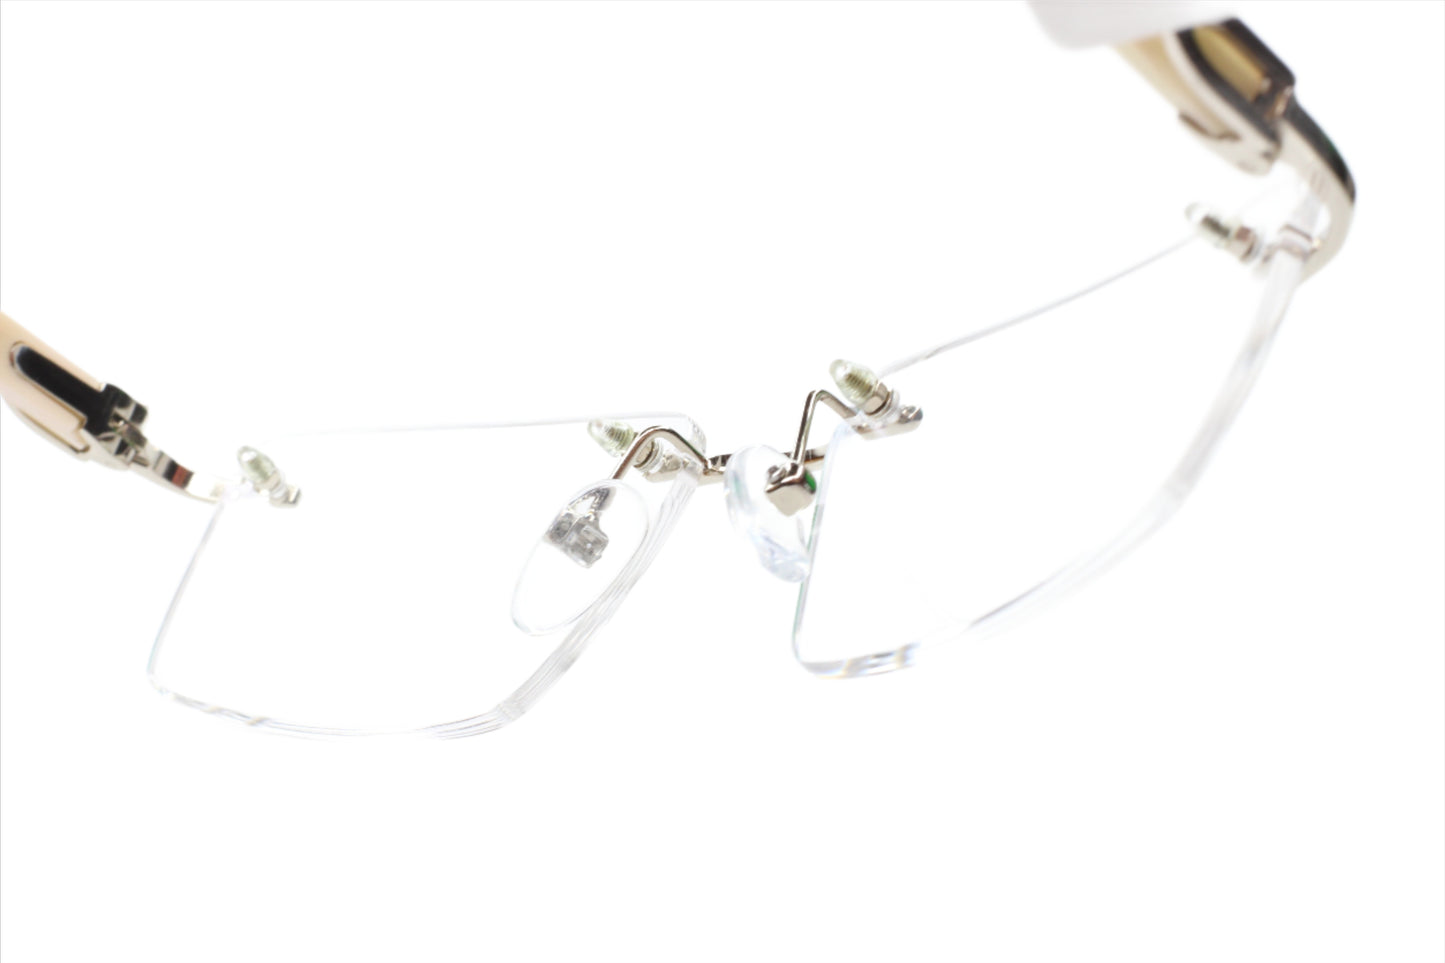 Myriad Eyewear ME00527 Silver Rimless Luxury Eyeglasses -Ma